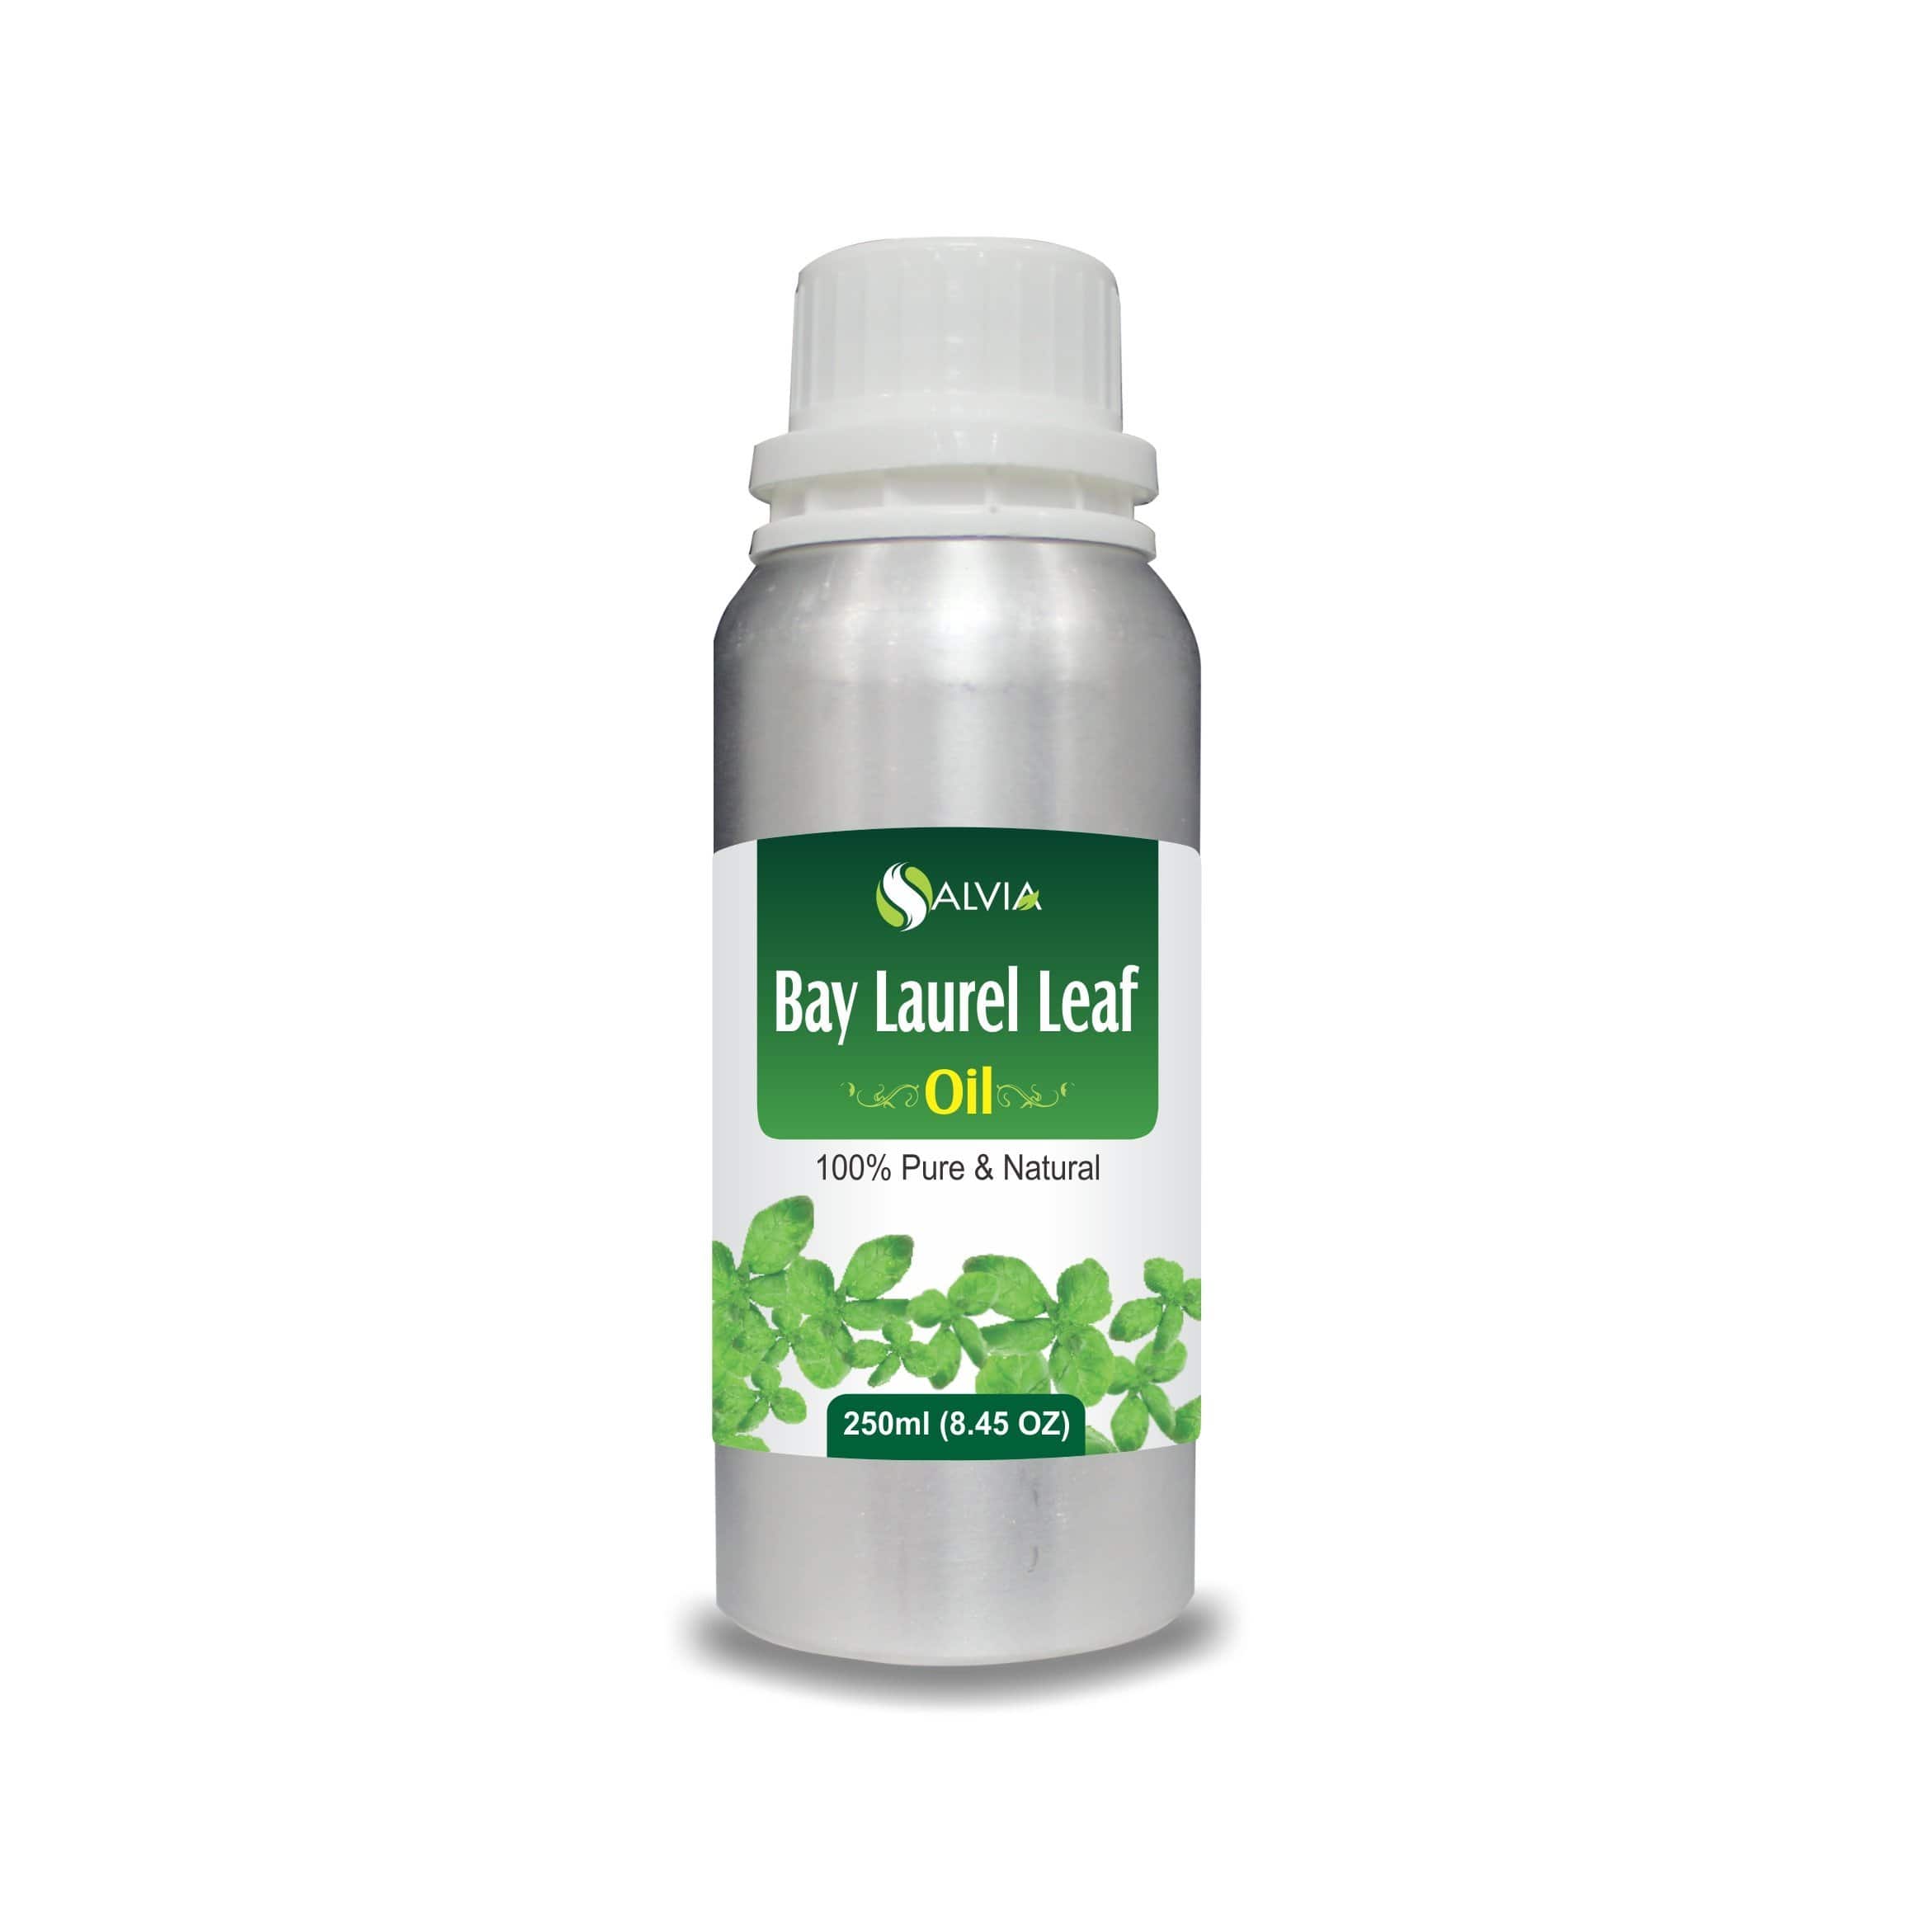 bay laurel oil benefits